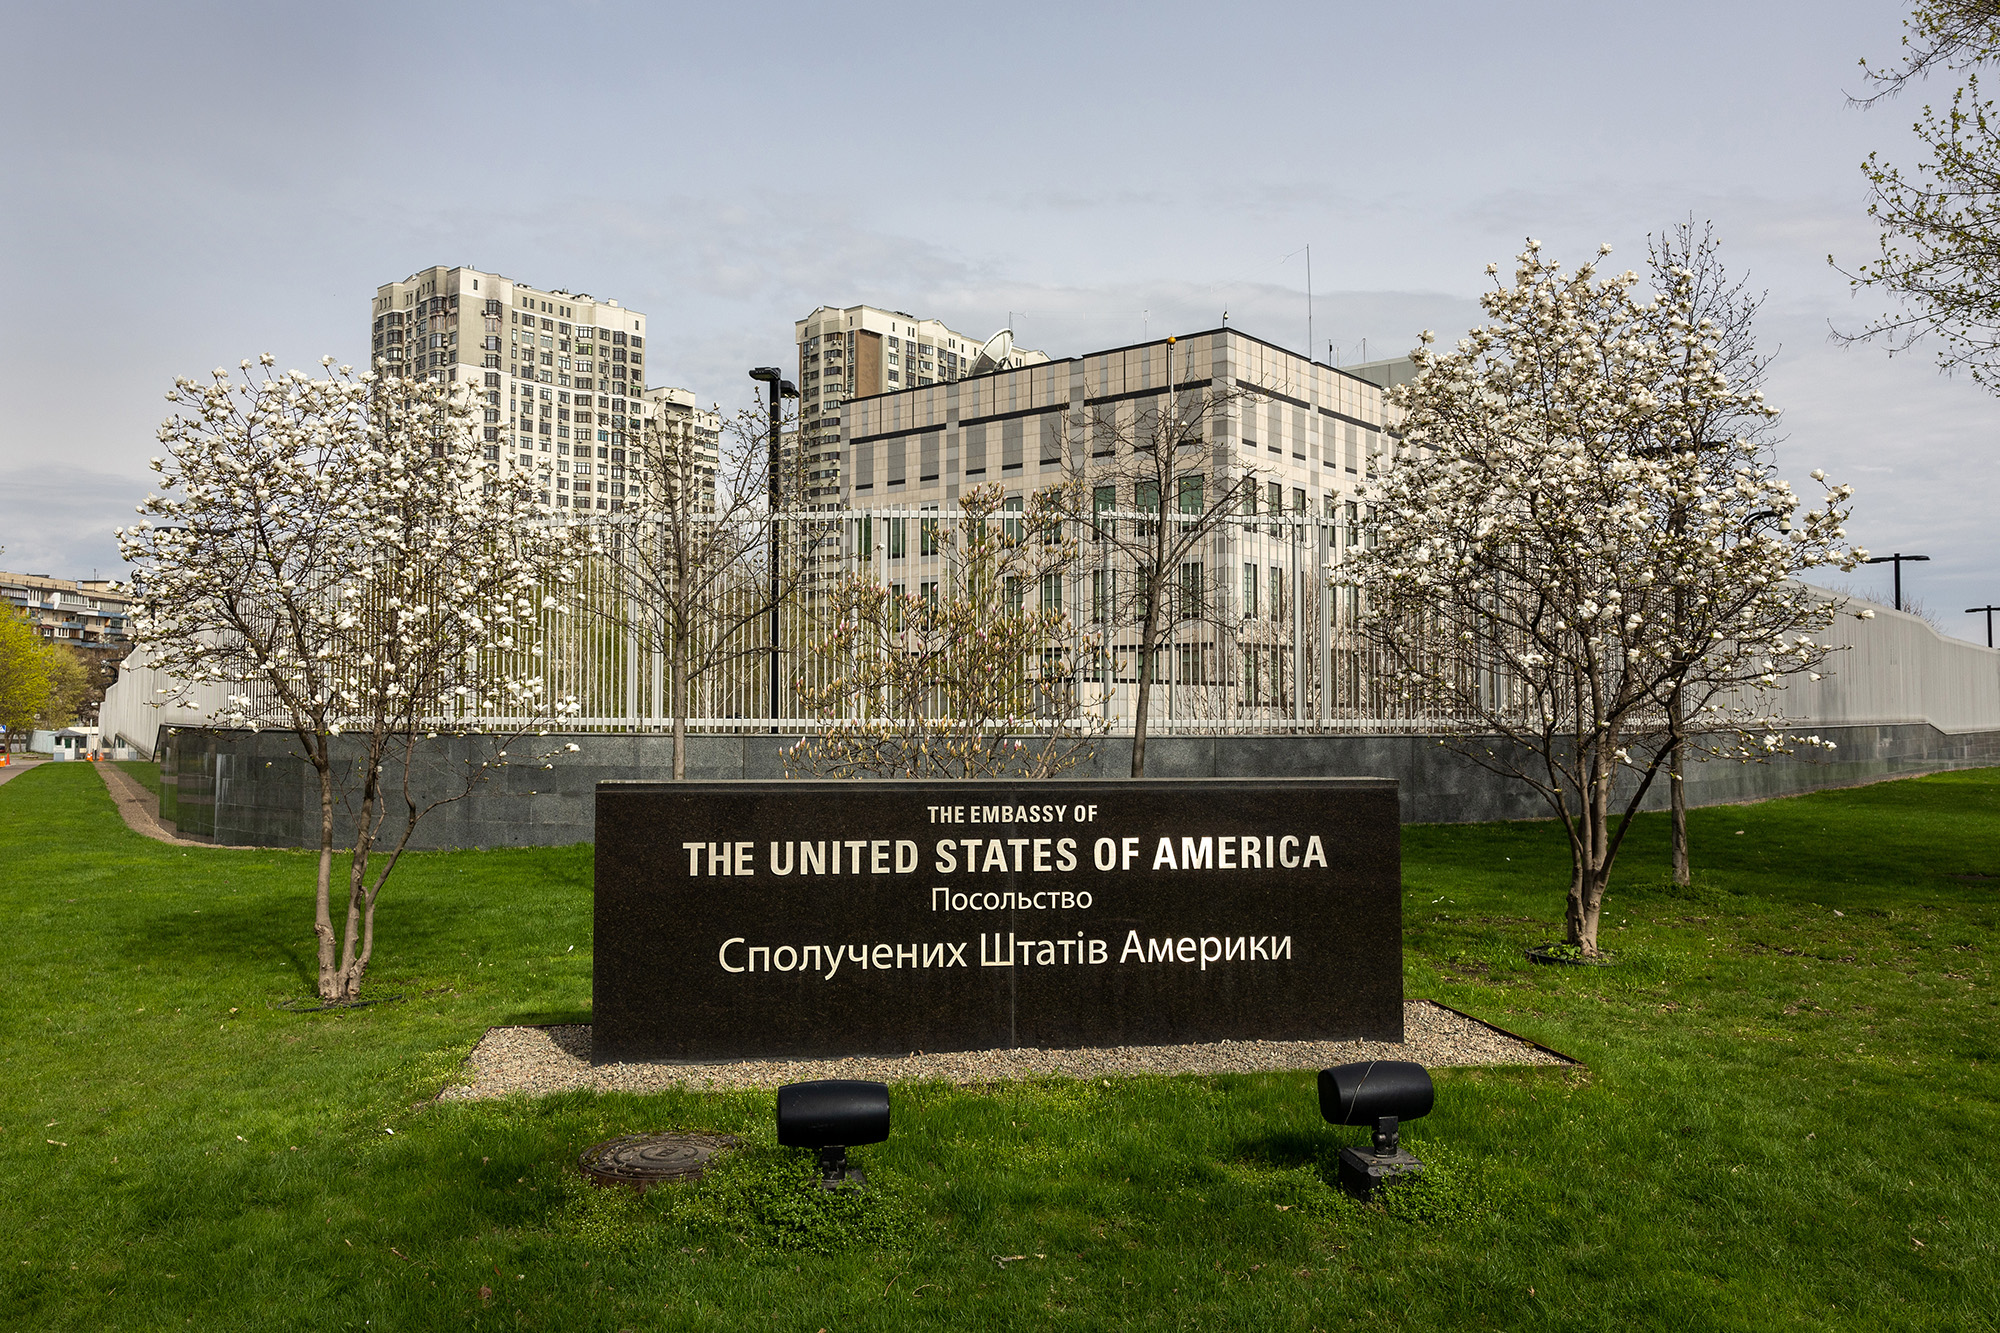 Zhvillimi i bujshëm, SHBA po diskuton futjen e forcave në Kiev për të mbrojtur ambasadën